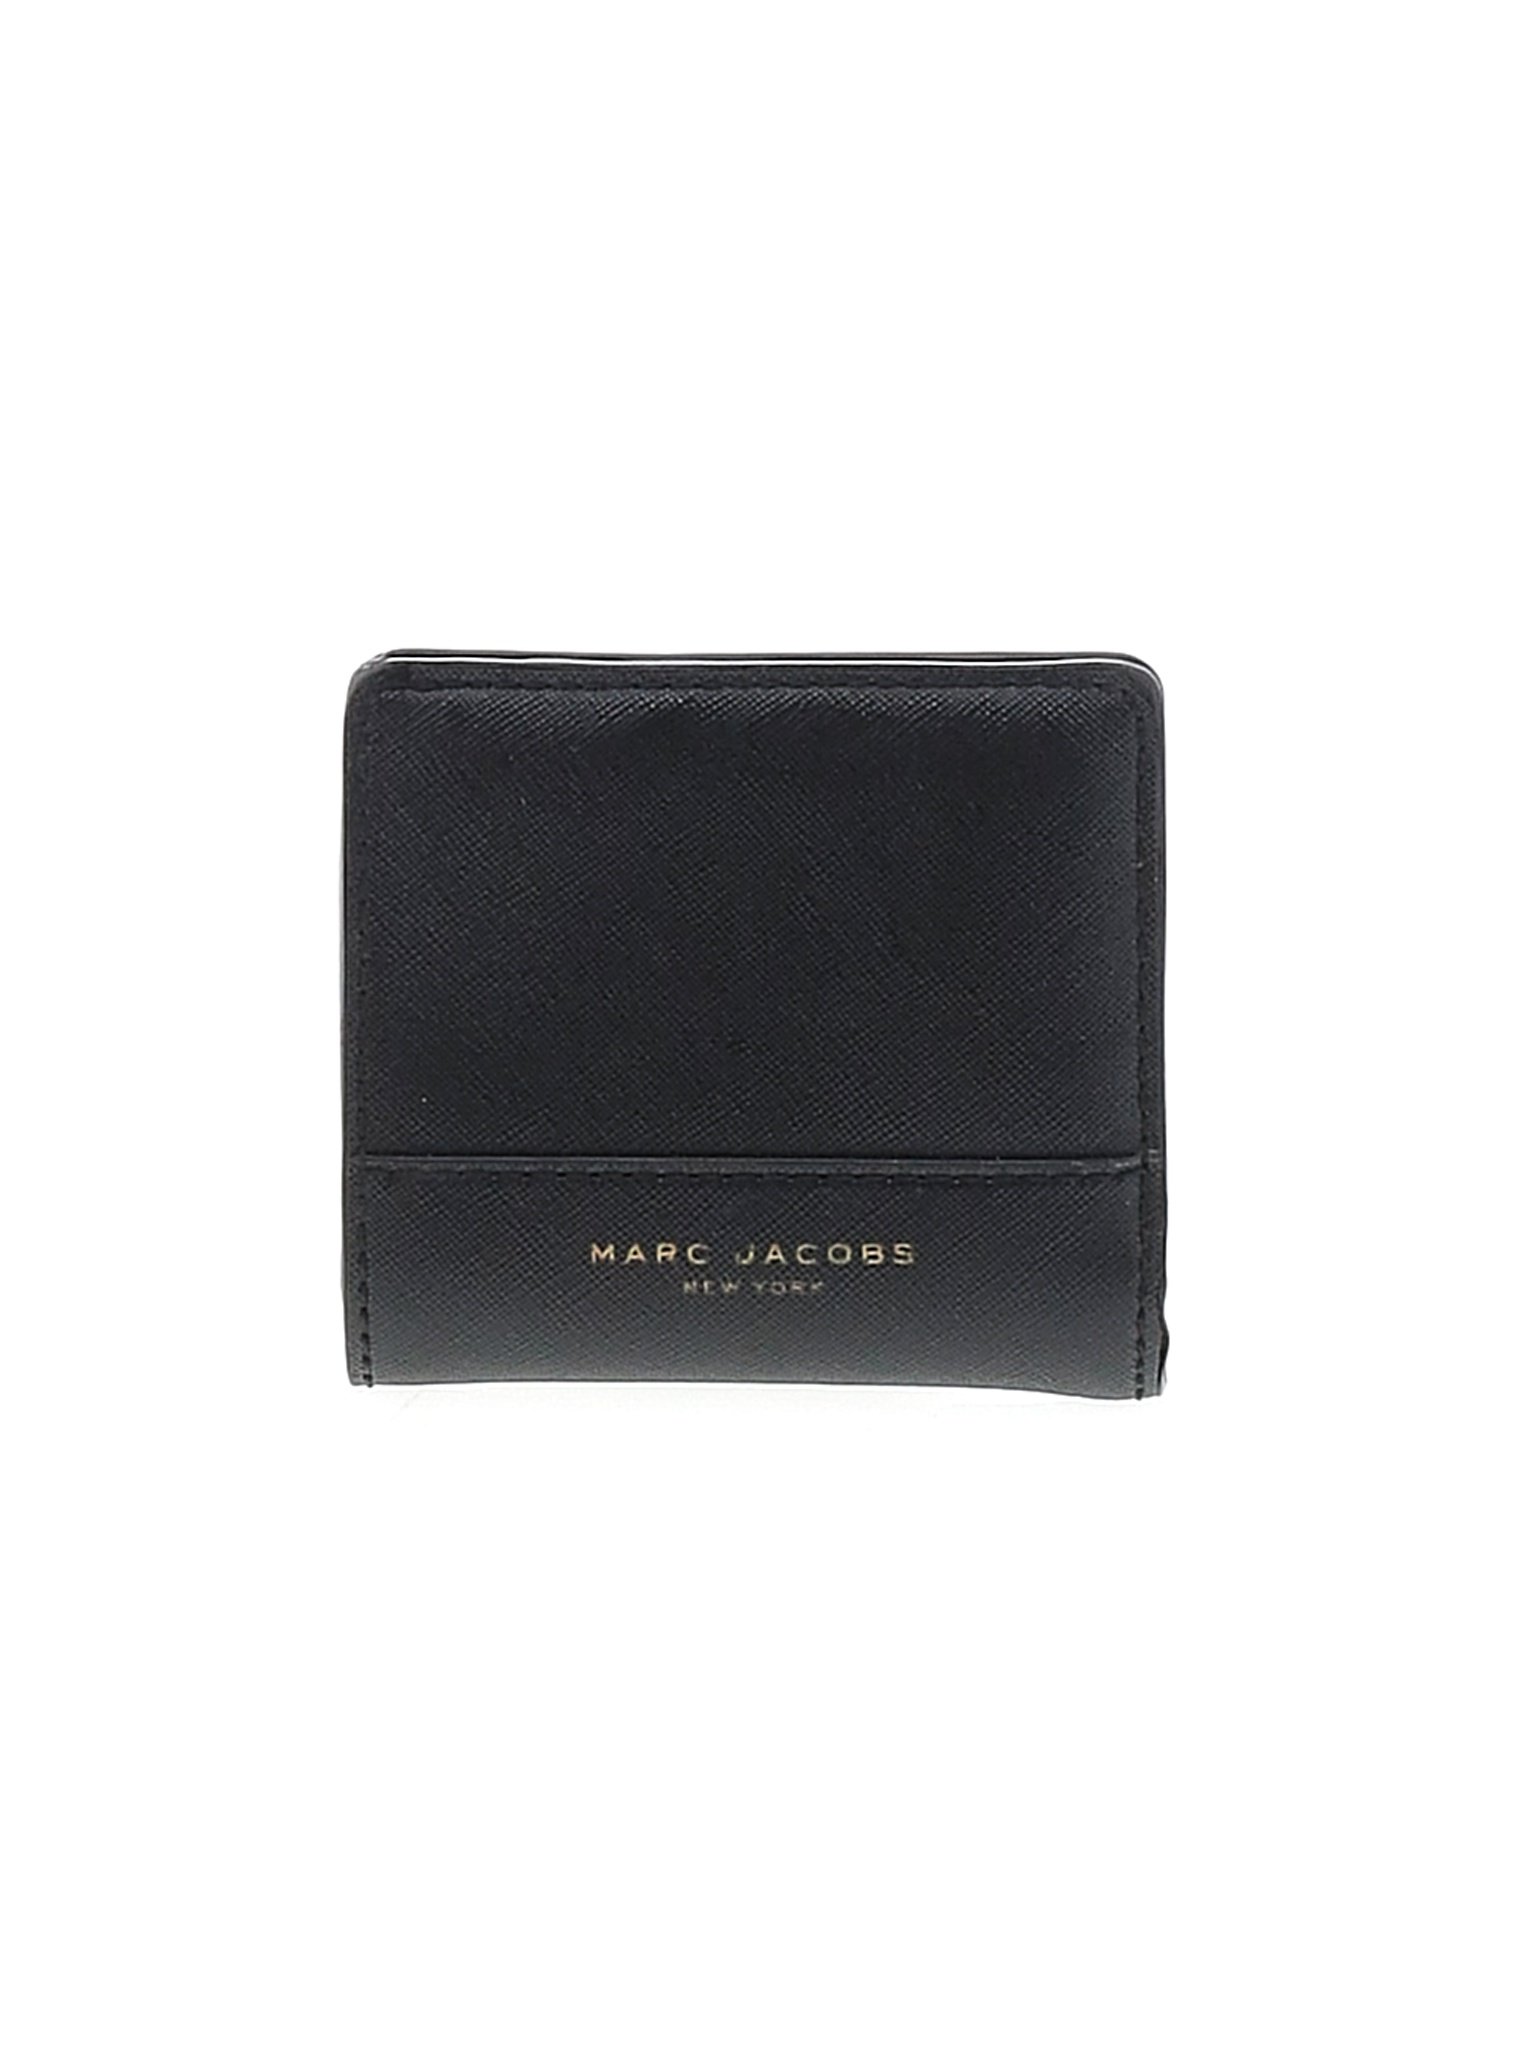 Marc Jacobs Women Black Wallet One Size | eBay